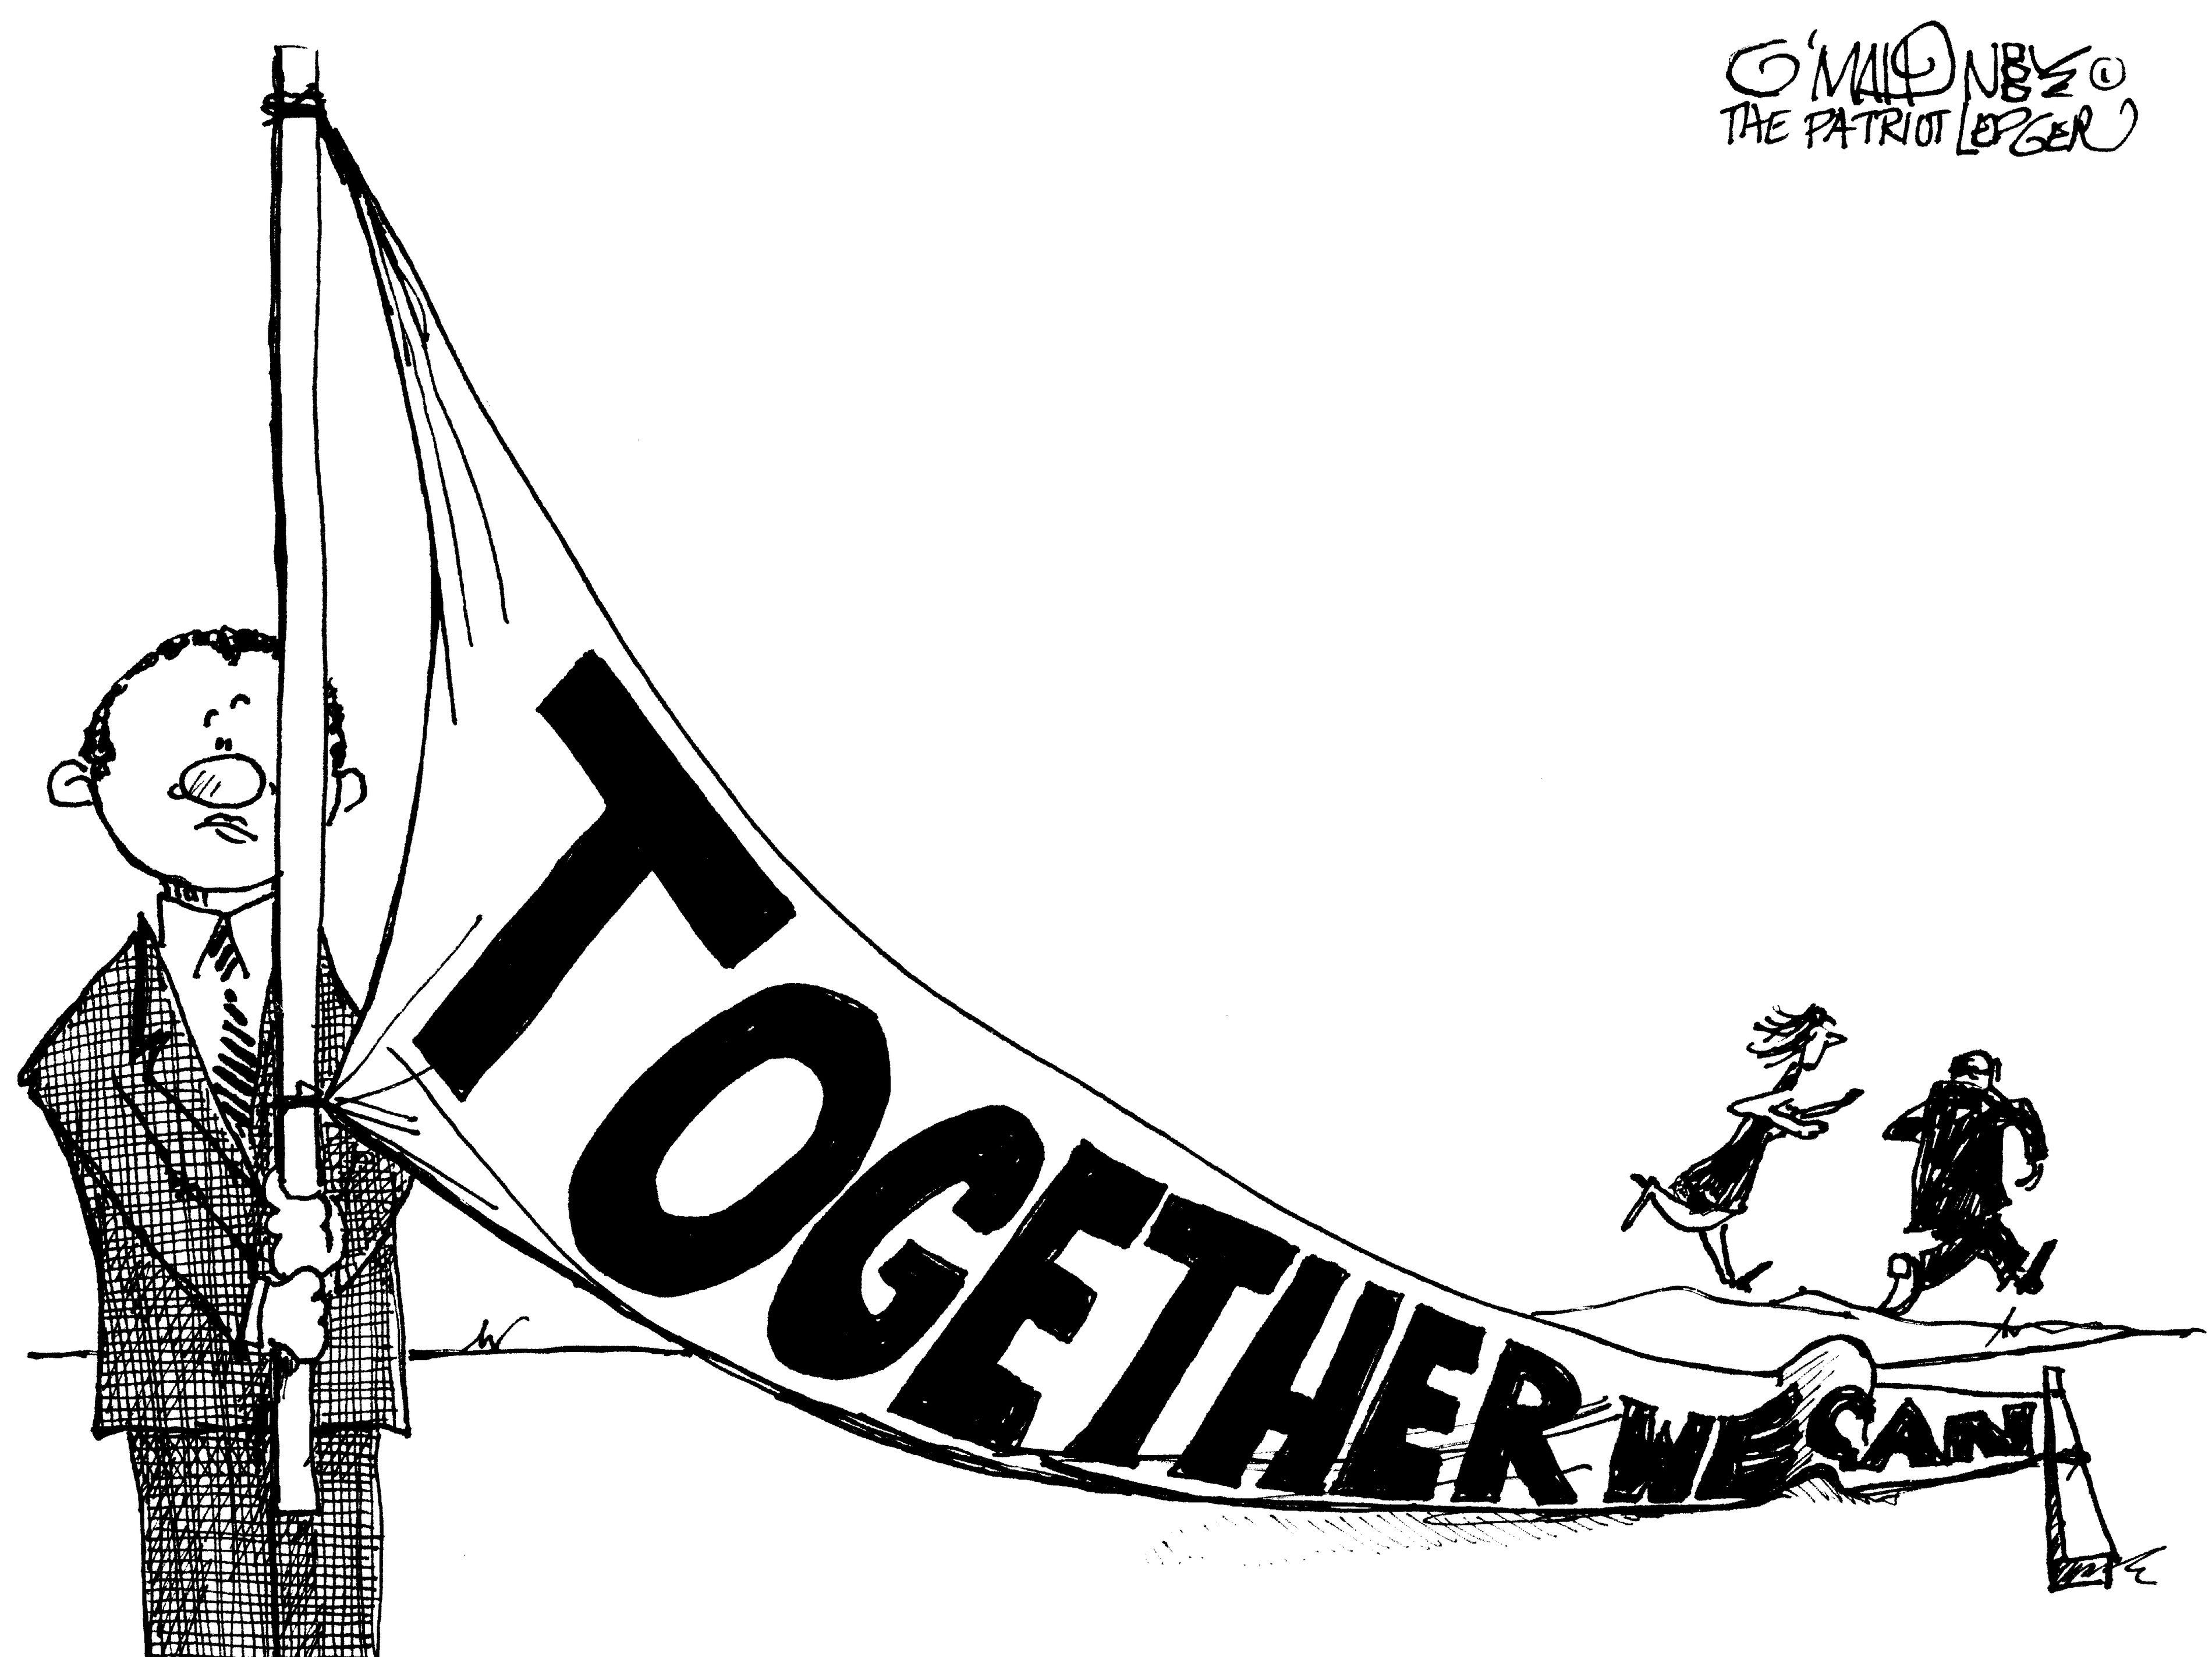 O'MAHONEY: Thursday's cartoon on Beacon Hill in-fighting